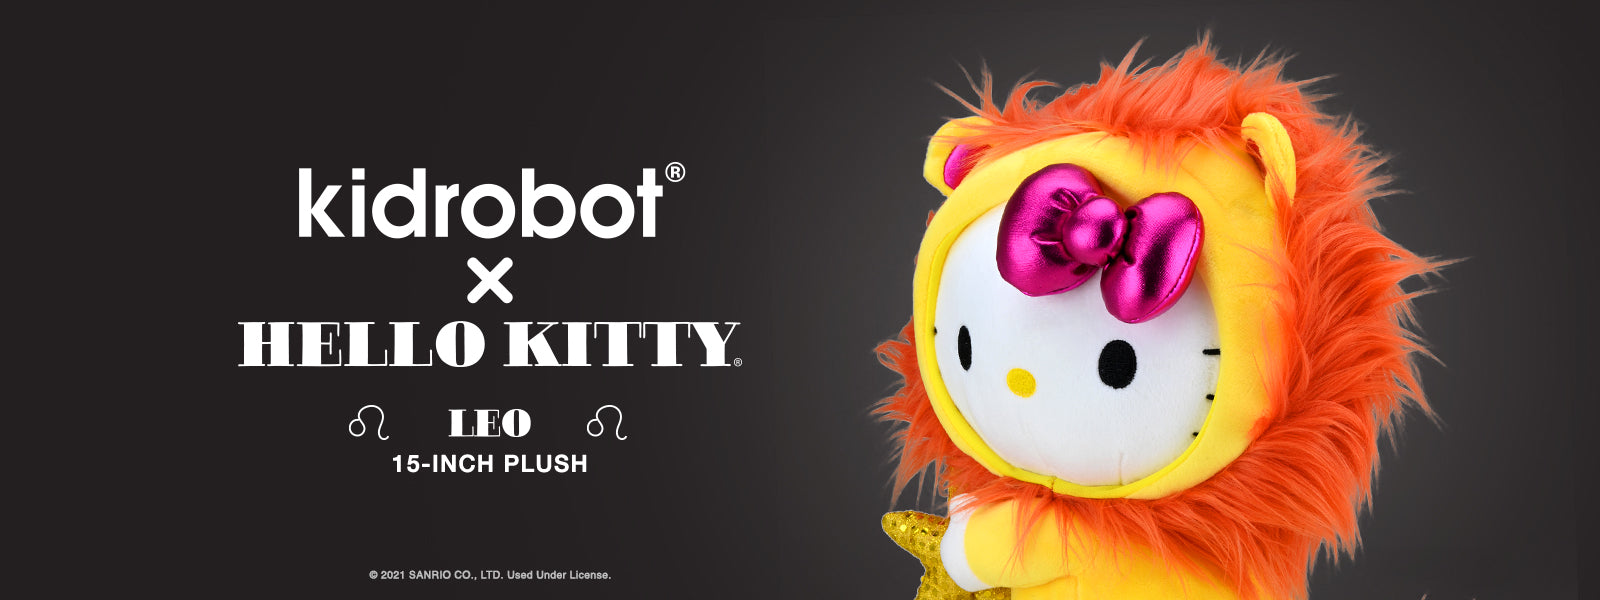 Hello Kitty Leo Zodiac Lion Plush by Kidrobot - Buy Your Zodiac Sign Hello Kitty Plushie Doll Now at Kidrobot.com